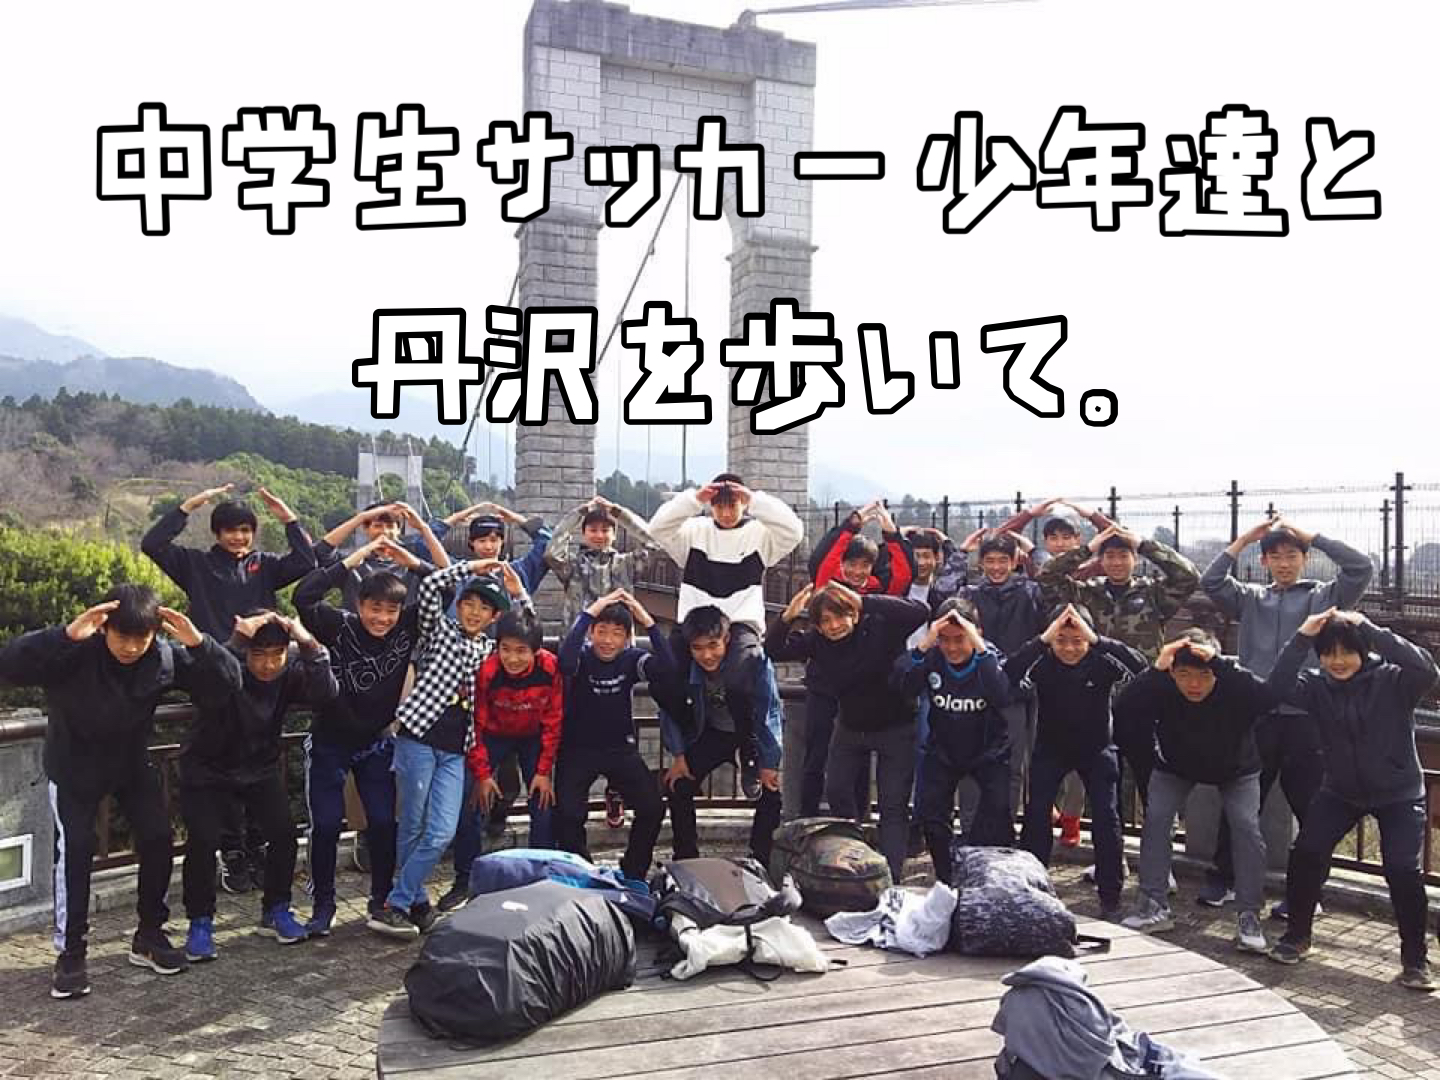 中学生サッカー少年達と丹沢を歩いて。